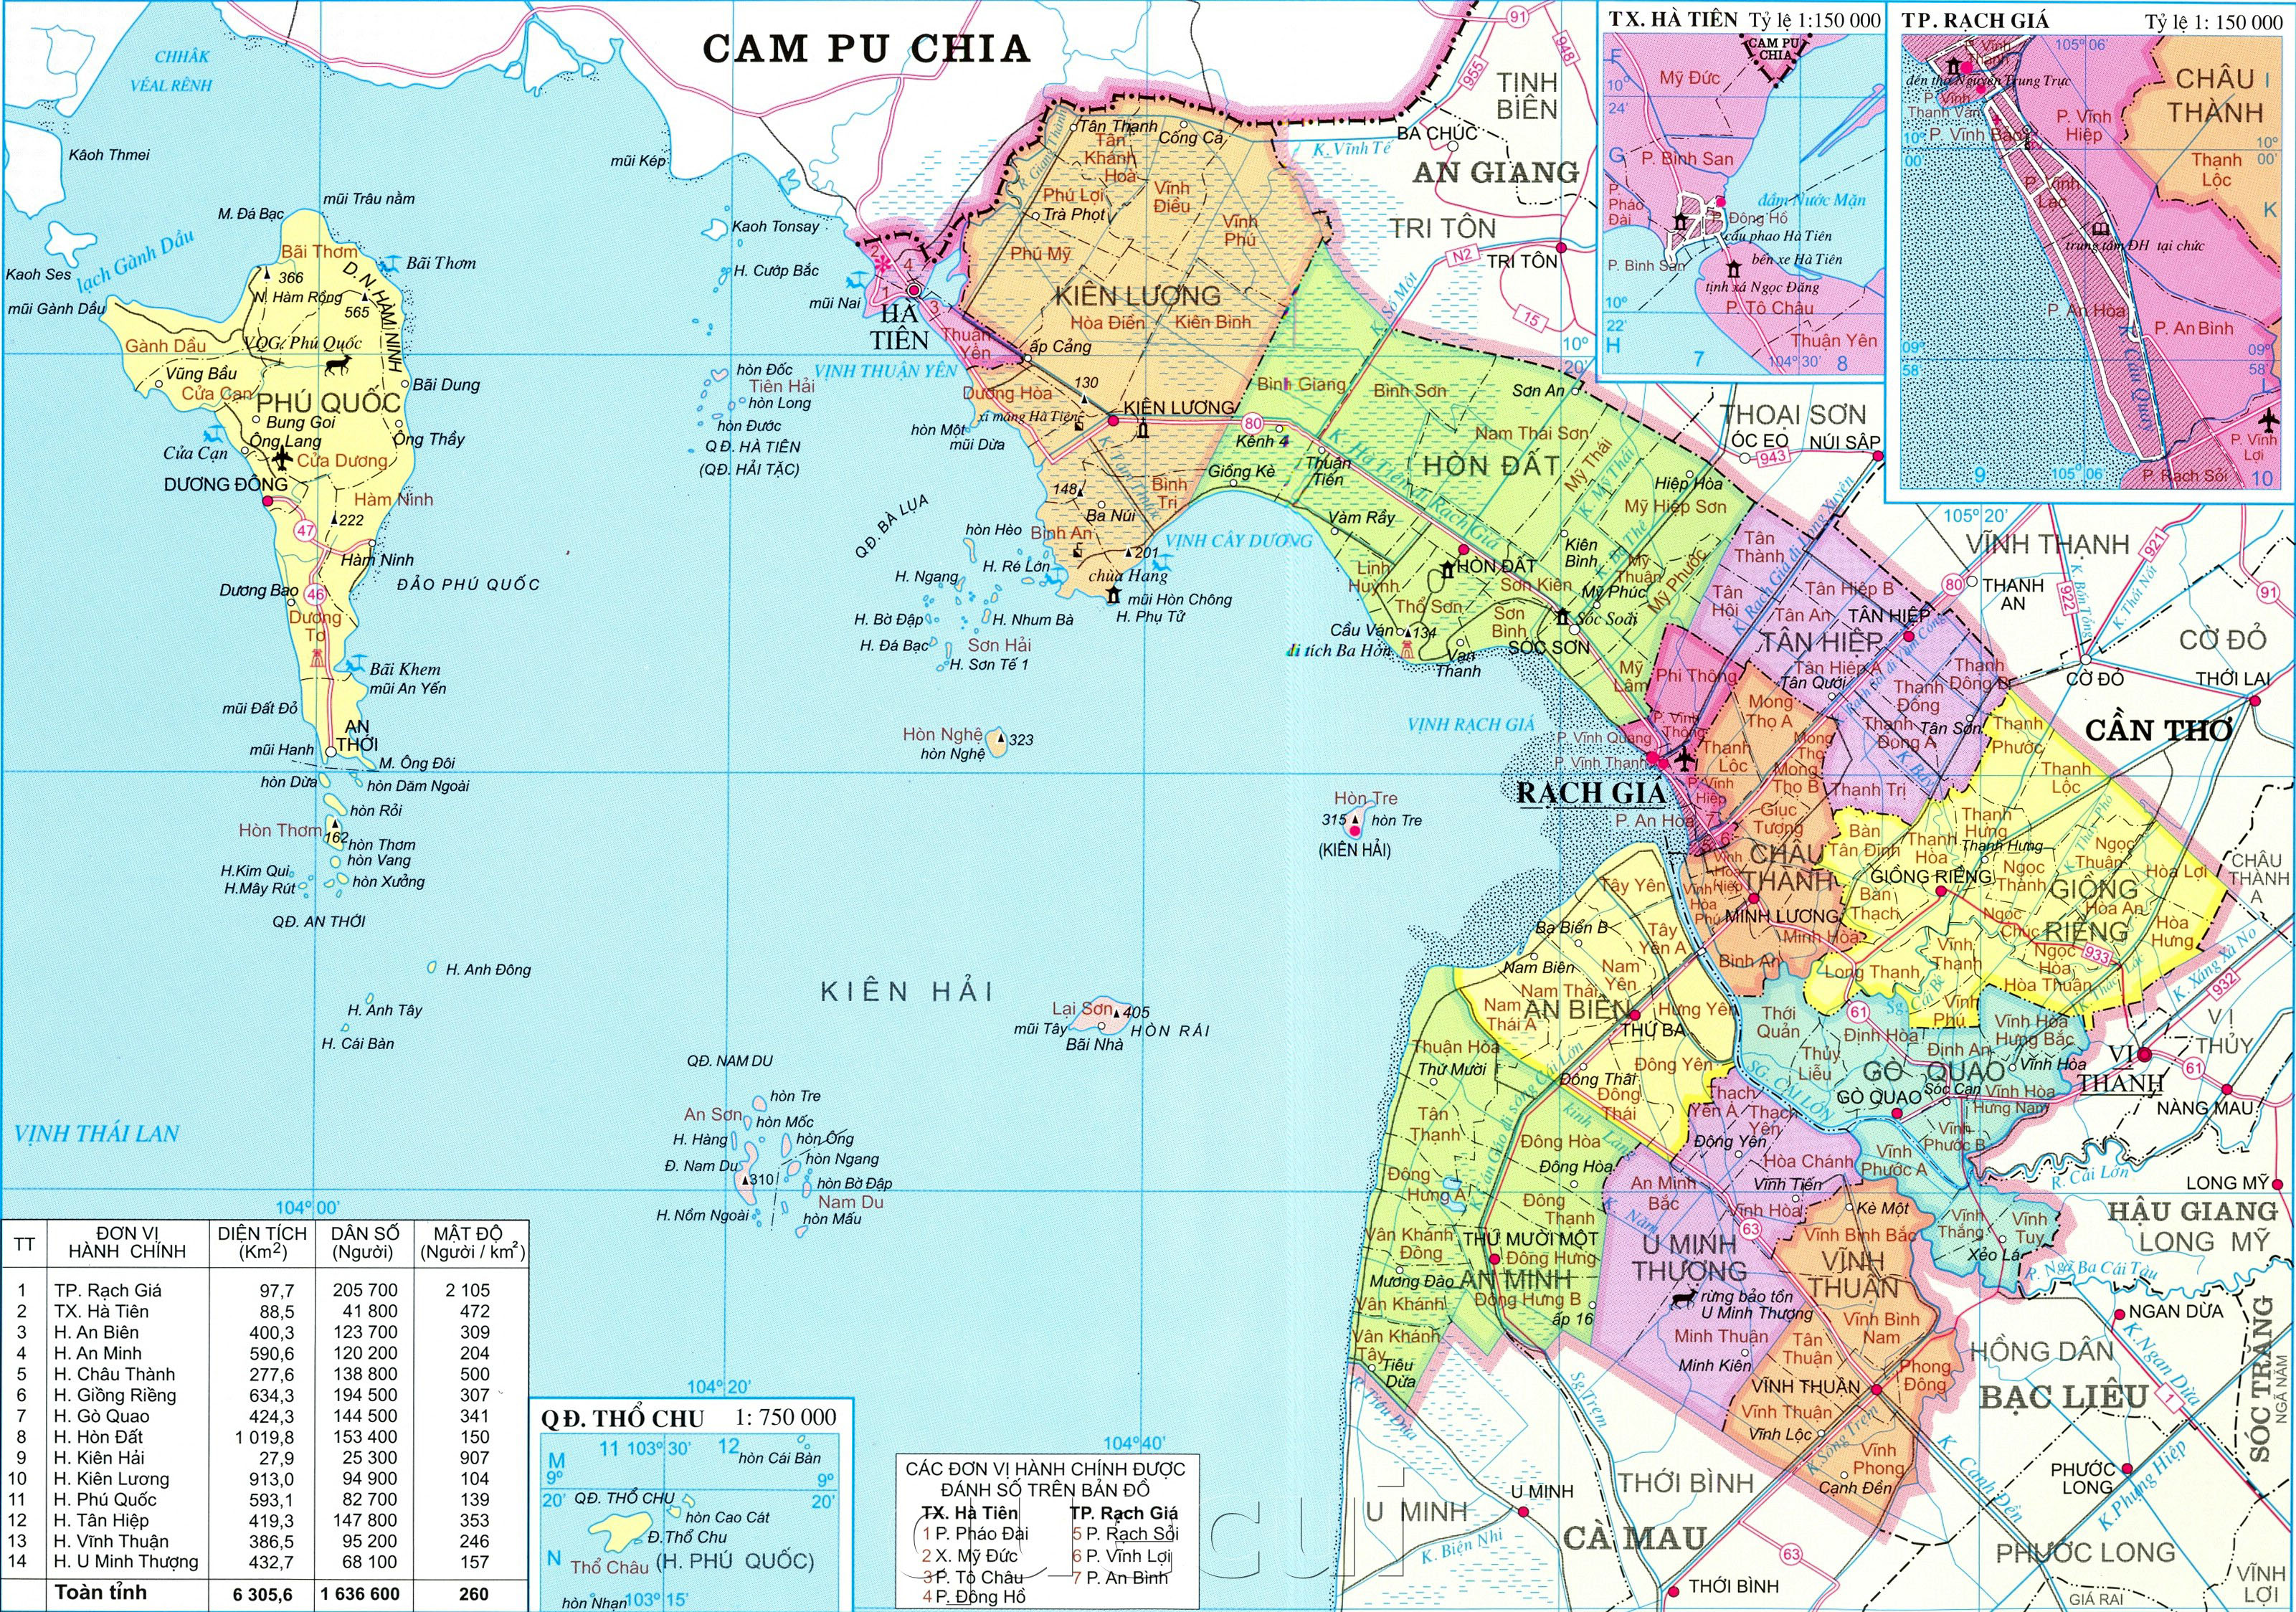 Xem bản đồ hành chính tỉnh Kiên Giang khổ lớn năm 2024 để có cái nhìn tổng quan về sự phát triển đồng bộ của vùng đất này. Bản đồ sẽ cho bạn thấy những điểm đến mới mẻ và cơ hội đầu tư hấp dẫn tại Kiên Giang.